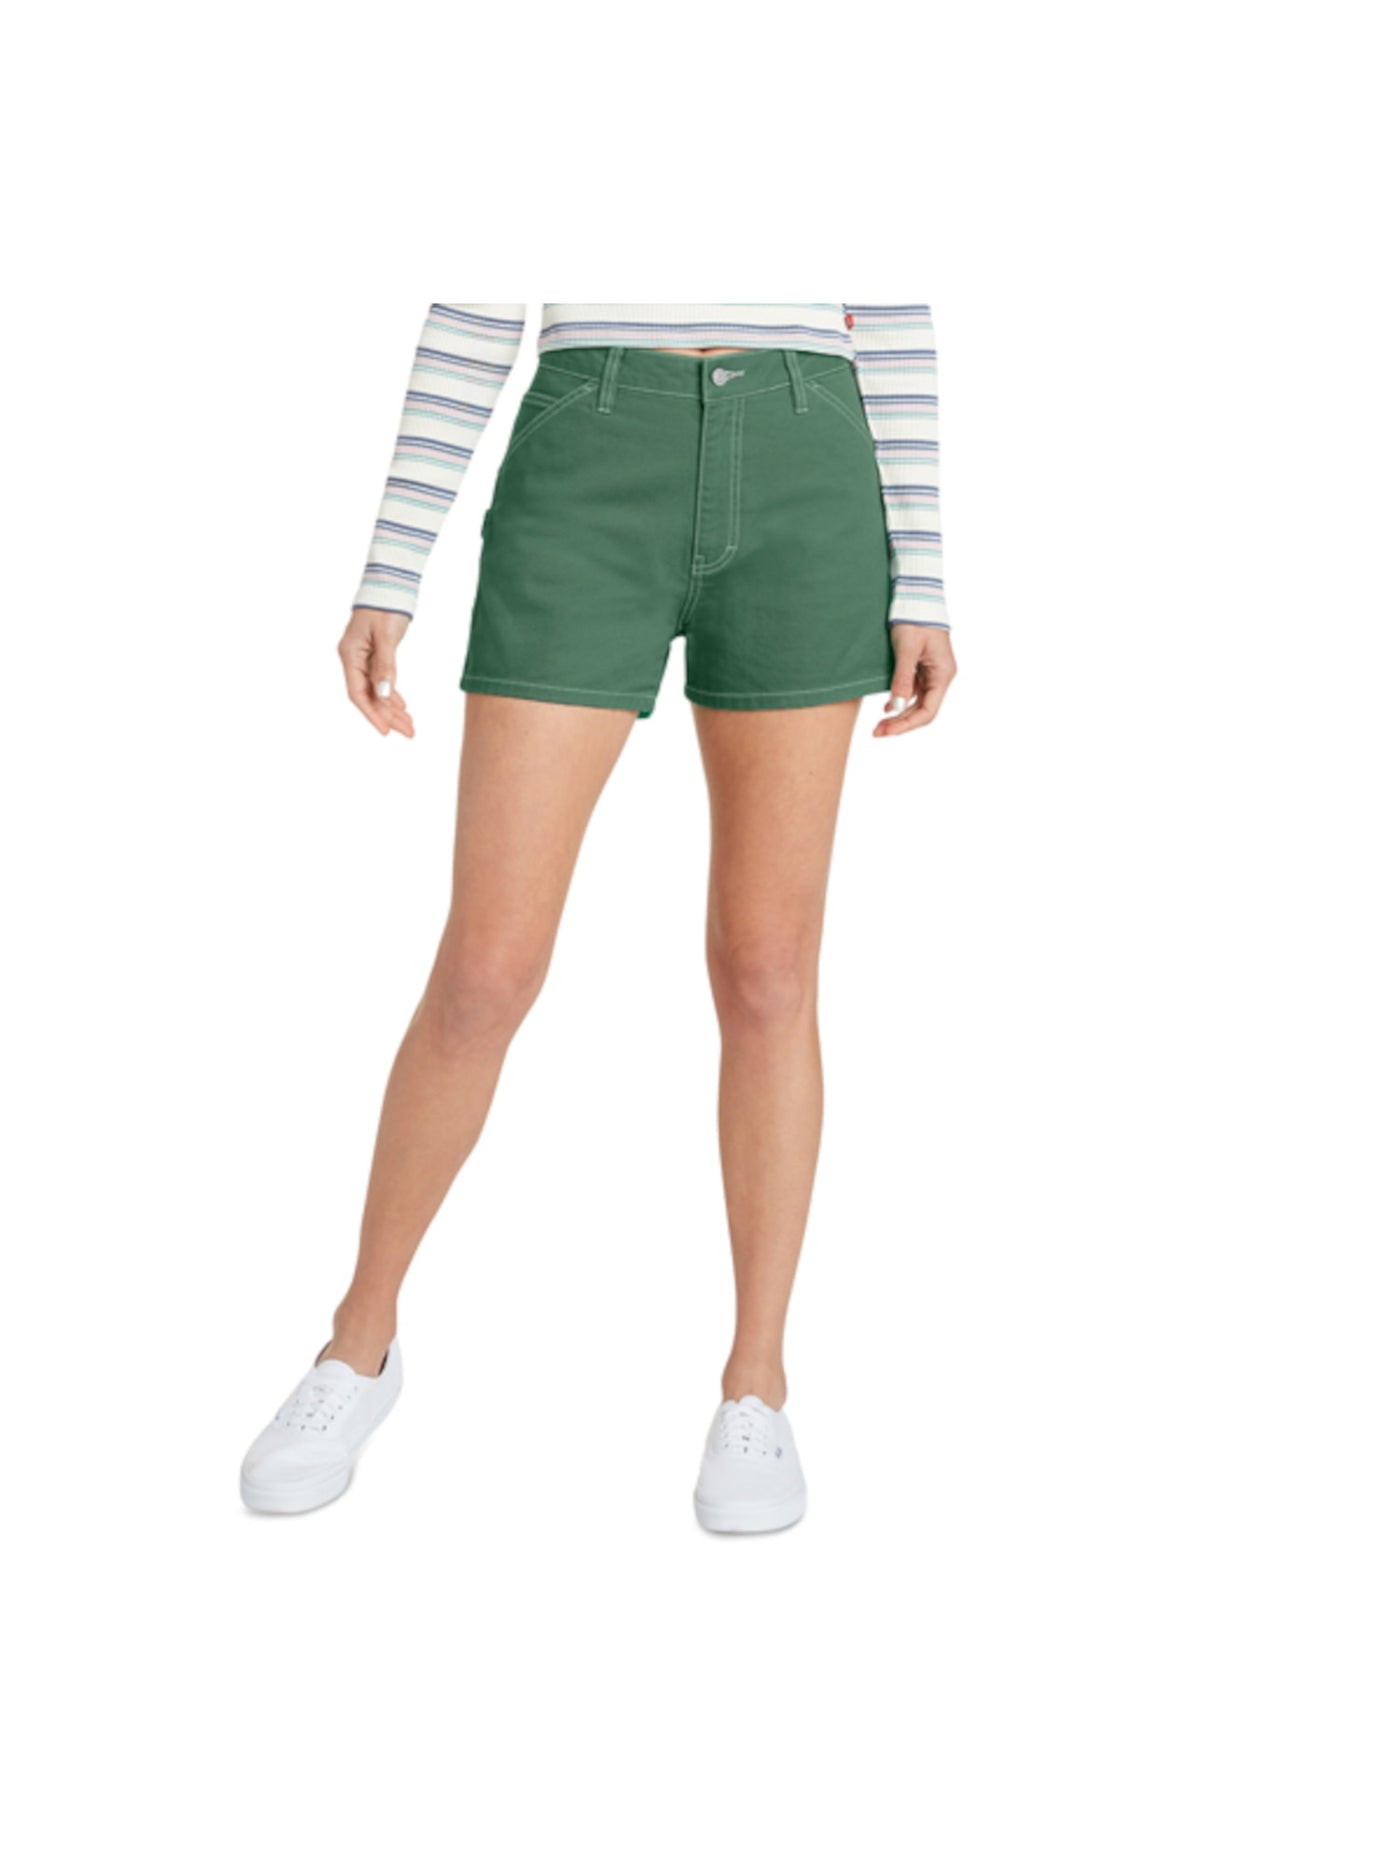 DICKIES Womens Green Zippered Pocketed Carpenter High Waist Shorts Juniors 1\25 Waist